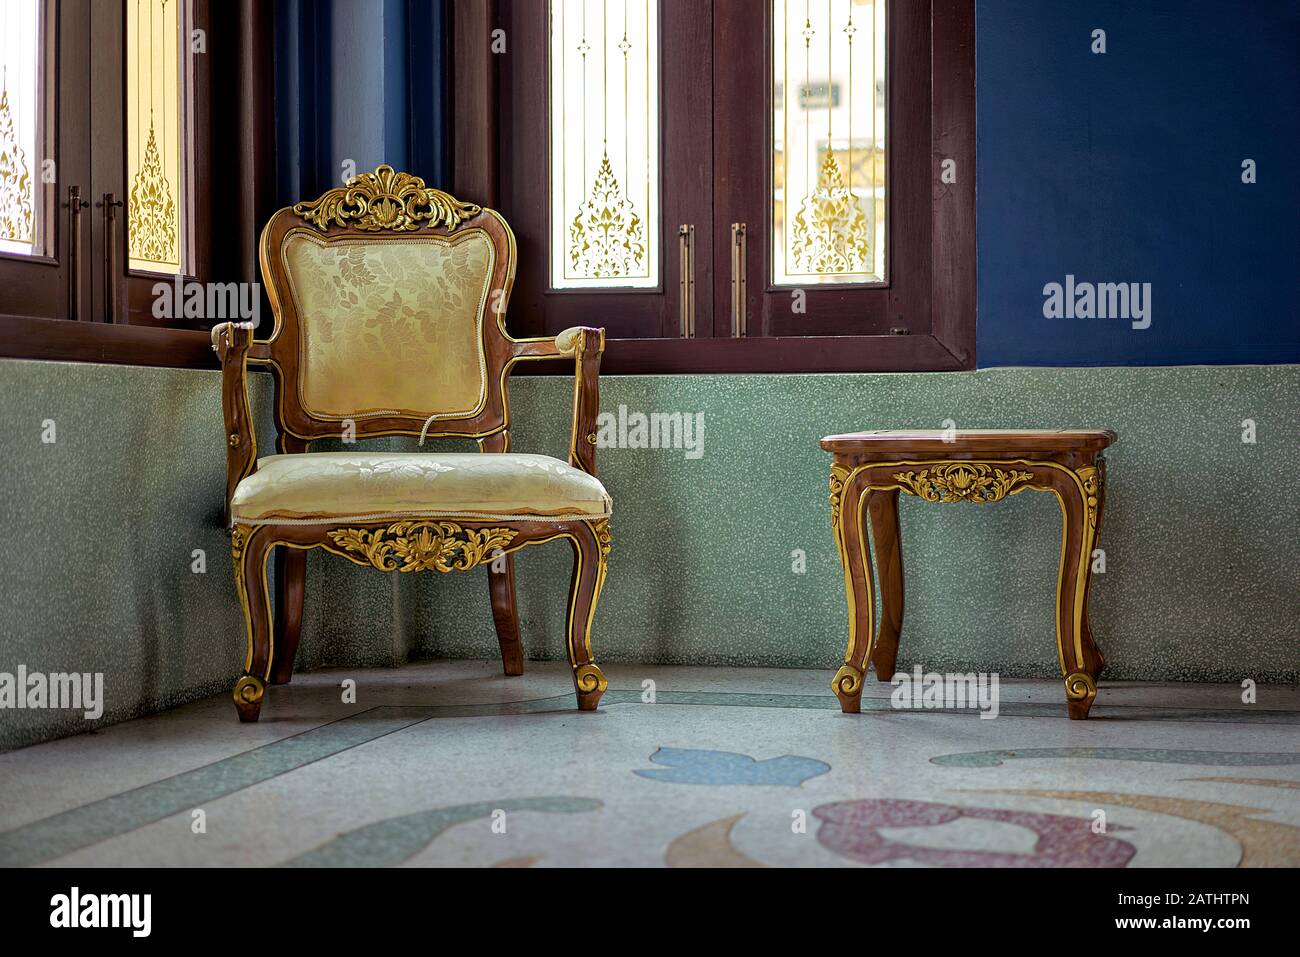 Chaise ancienne, chaise de style Queen Anne et mobilier assorti à la table; intérieur minimaliste Banque D'Images